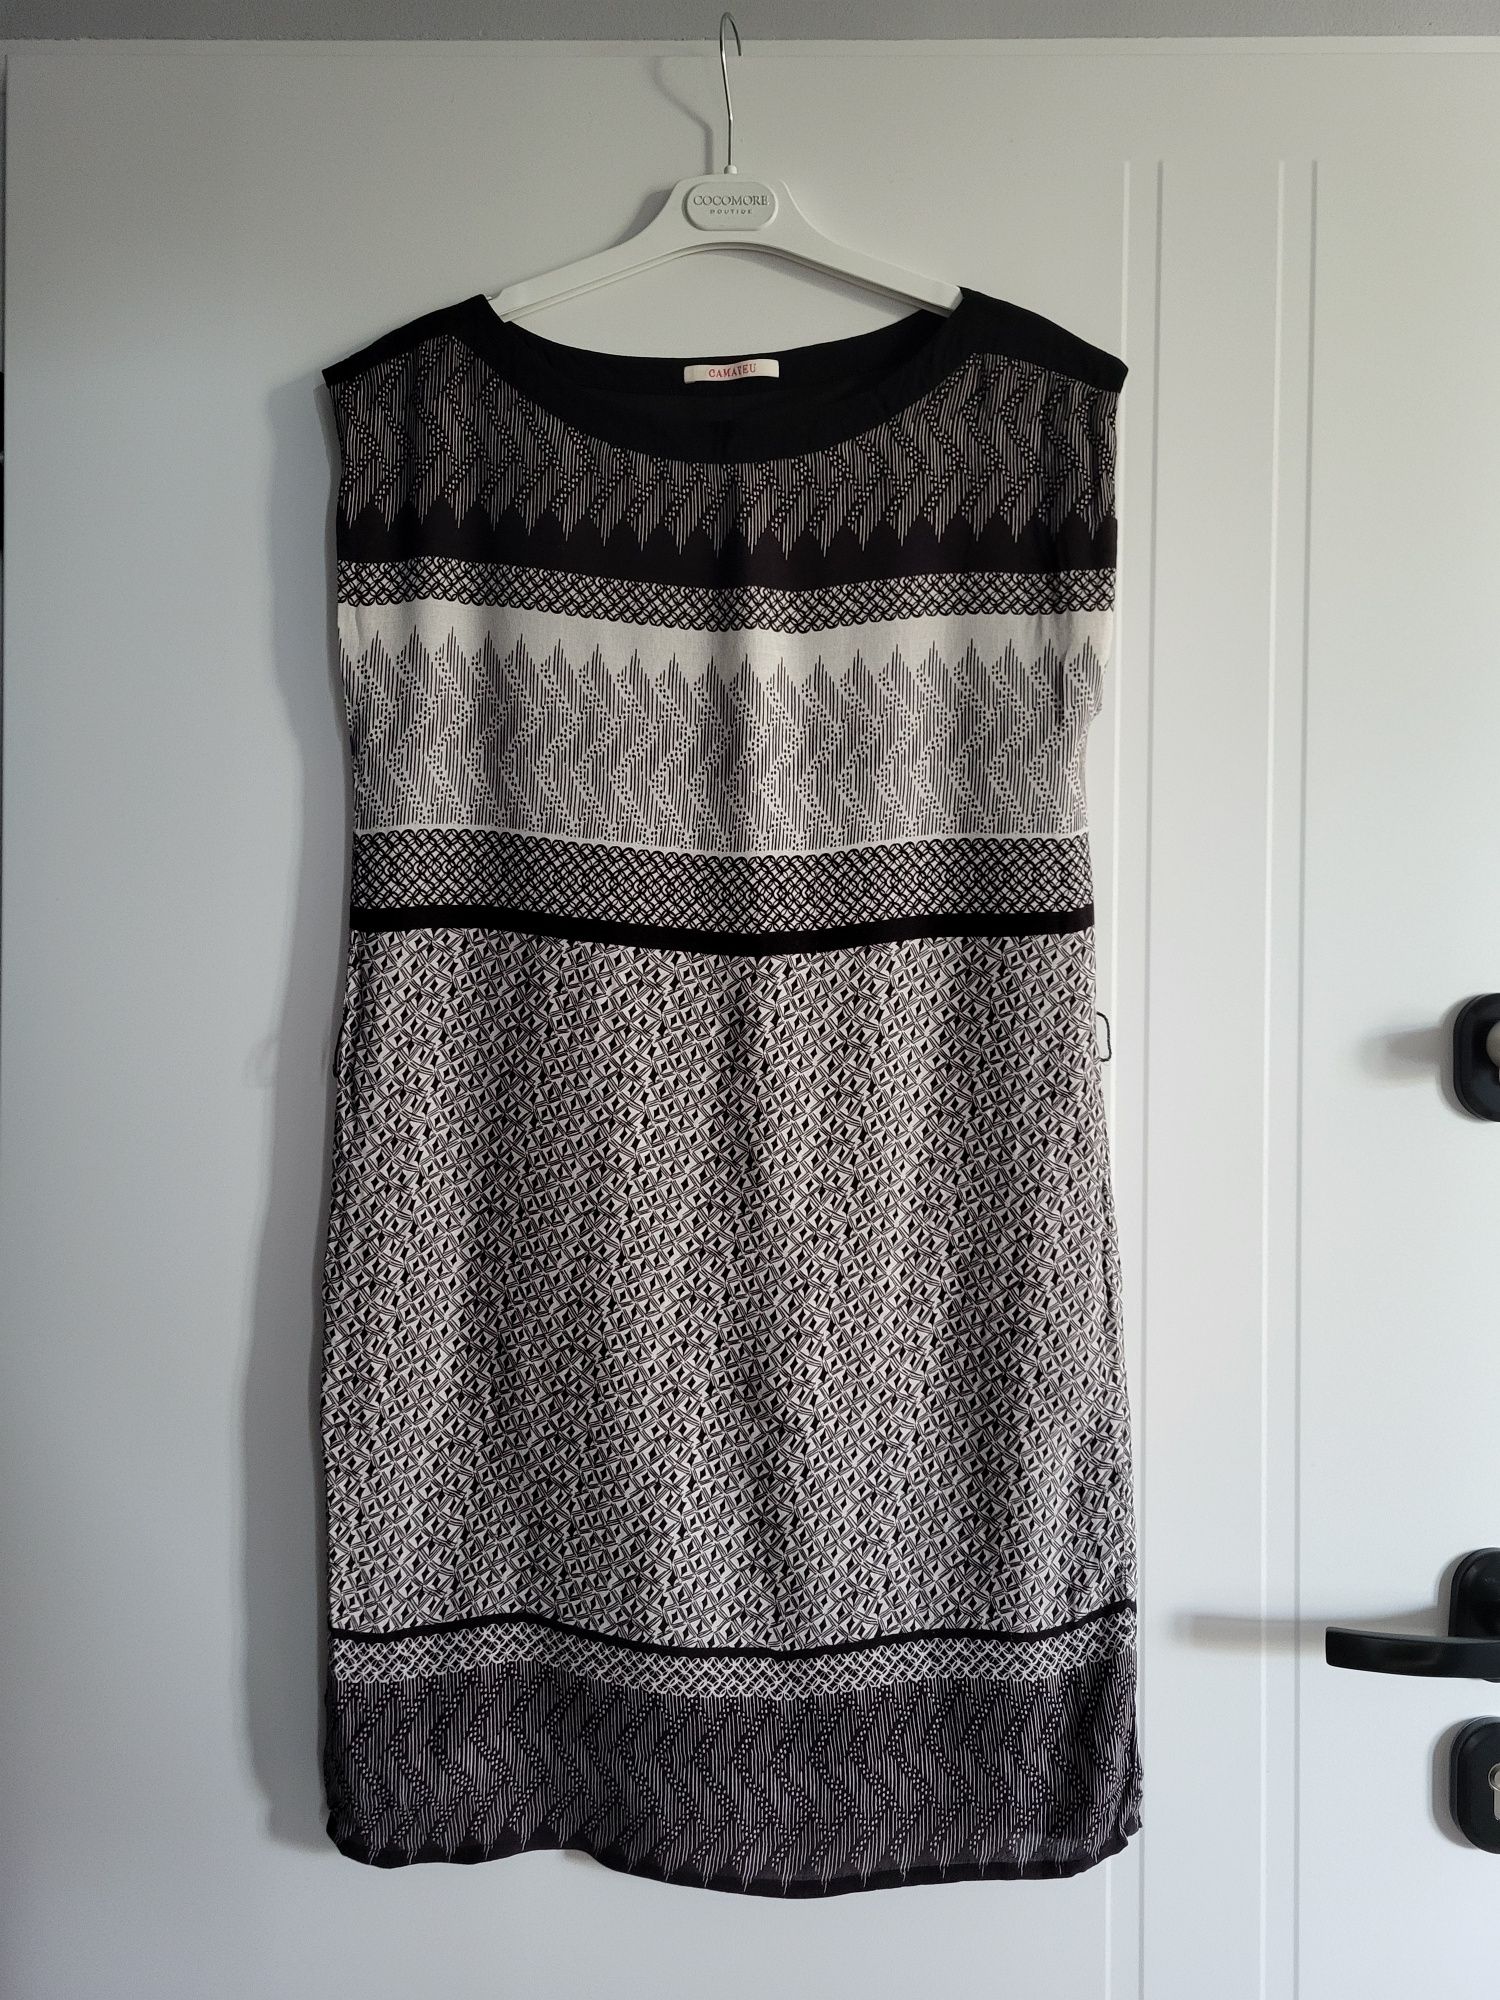 Letnia sukienka w czarno-białe wzory rozmiar M, Camaieu